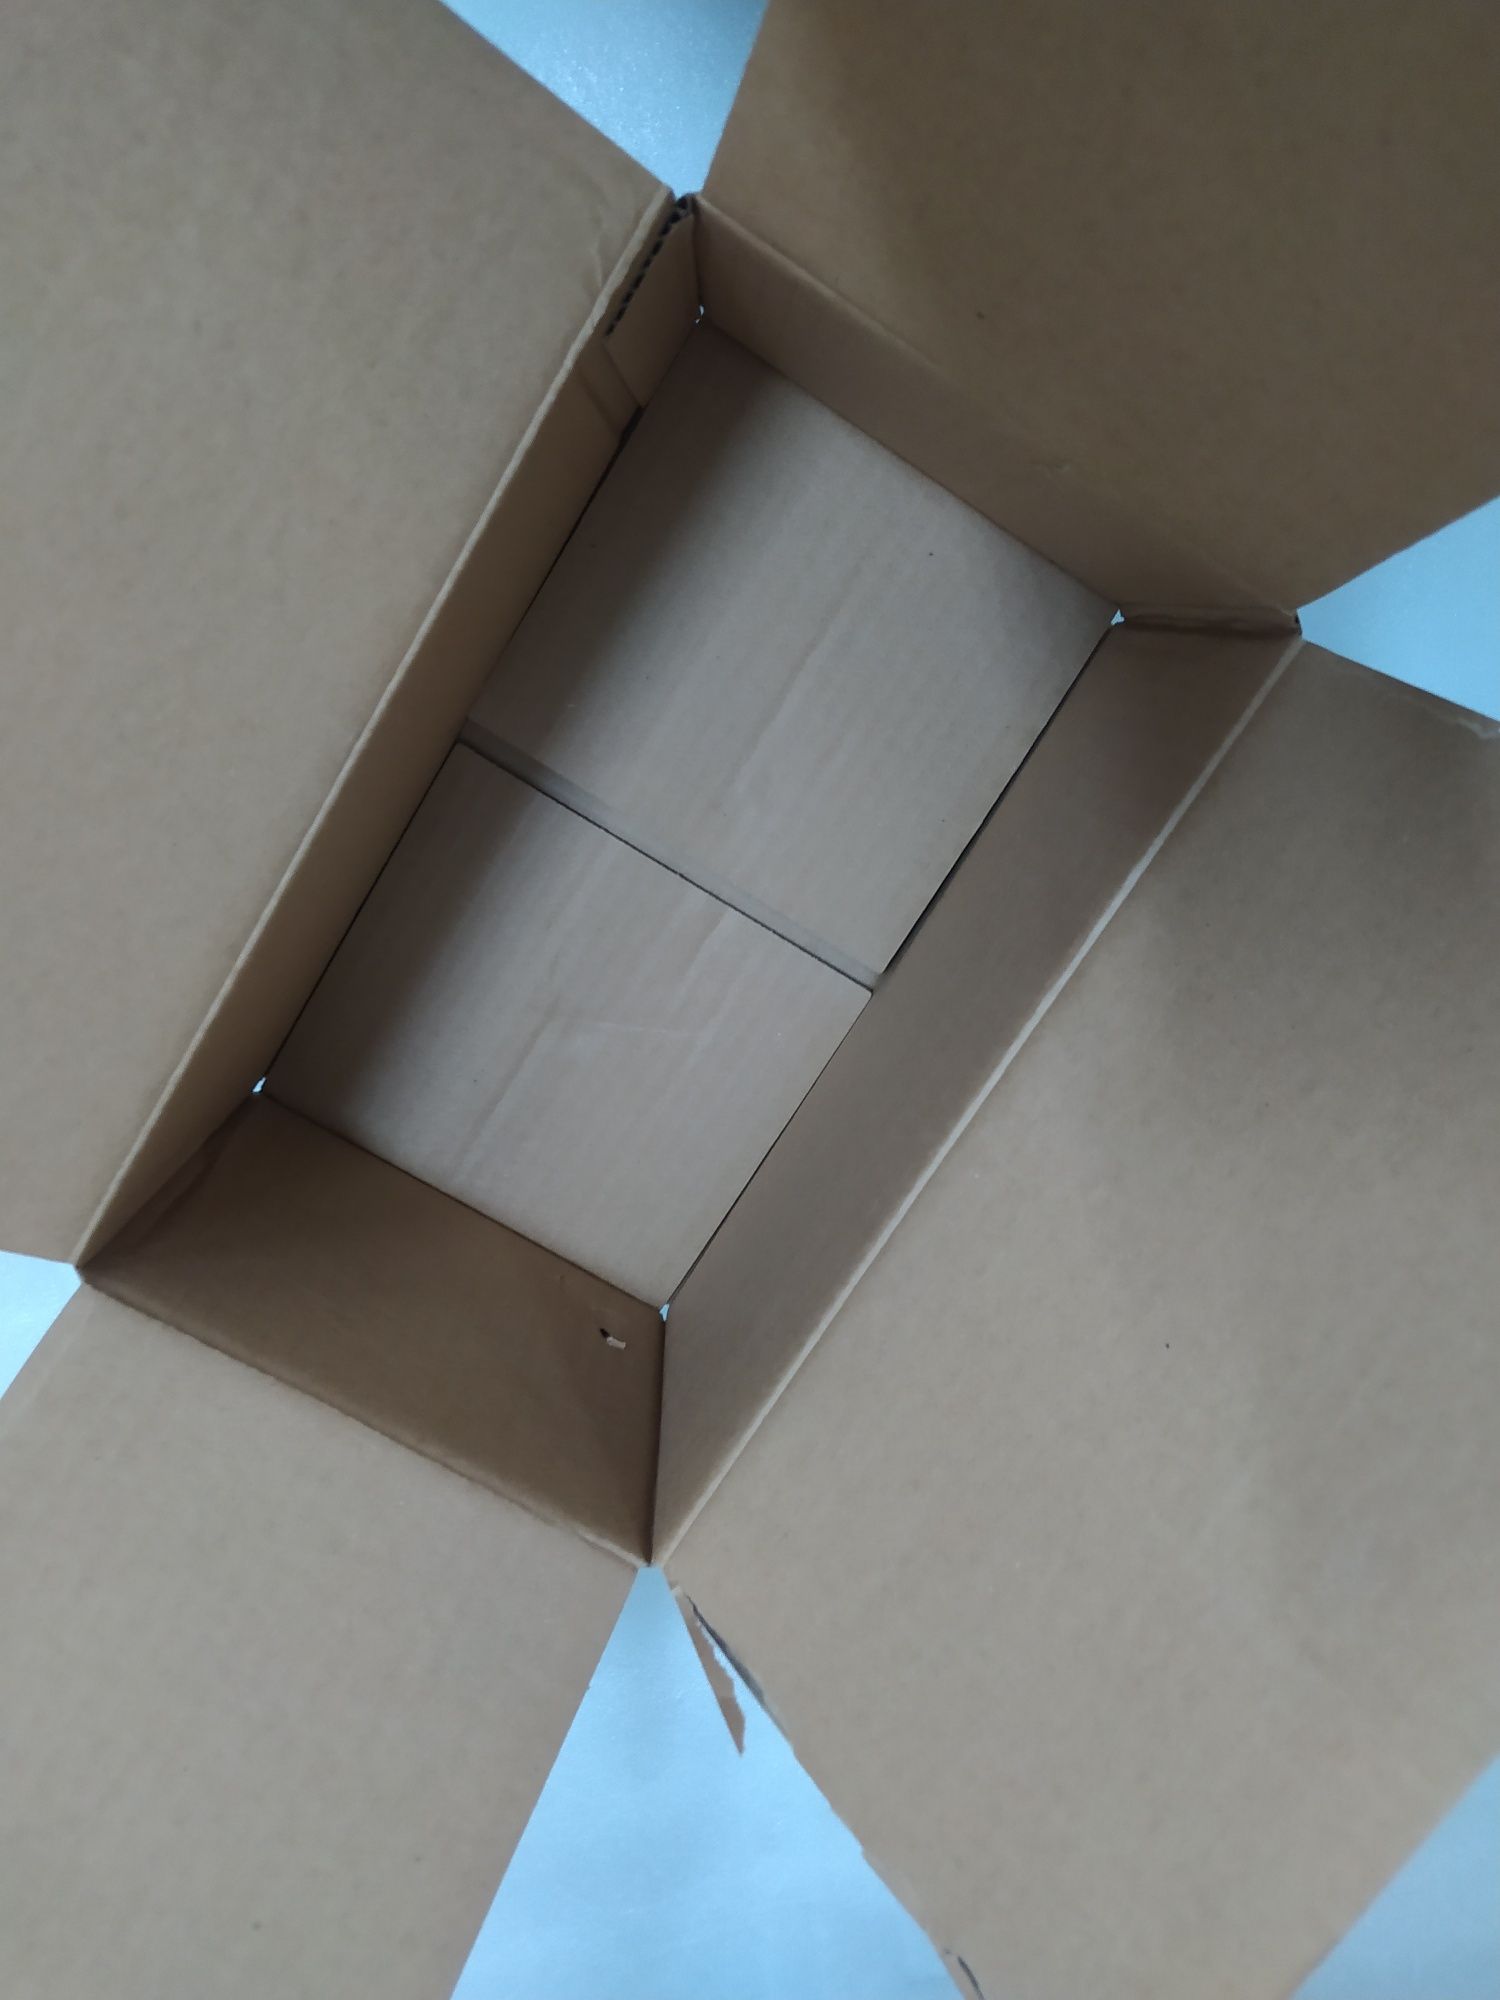 Коробки для упаковки, например для отправки мелких товаров через Каспи